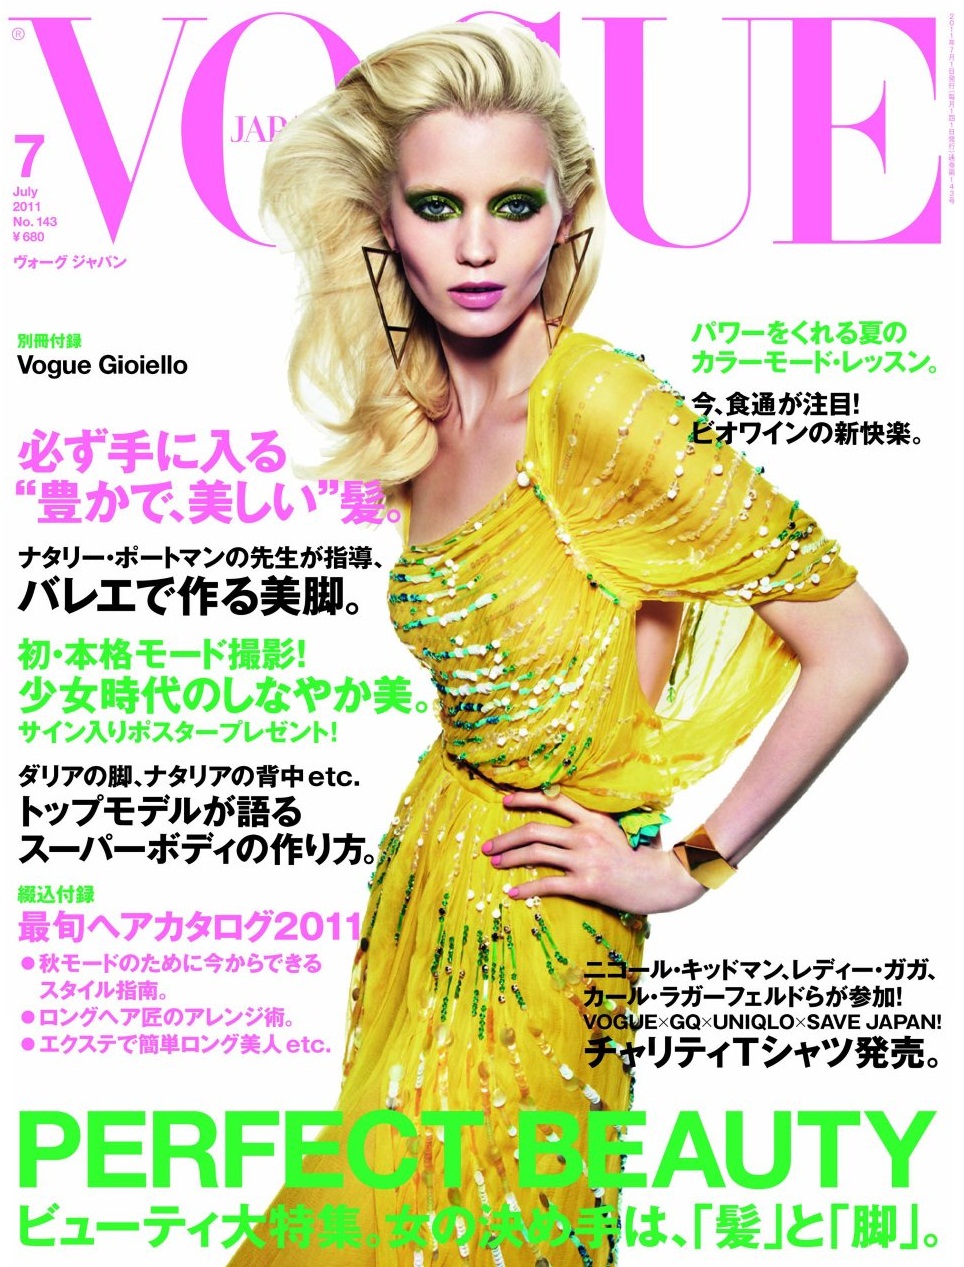 Обложки Vogue за Июль (фото 5)